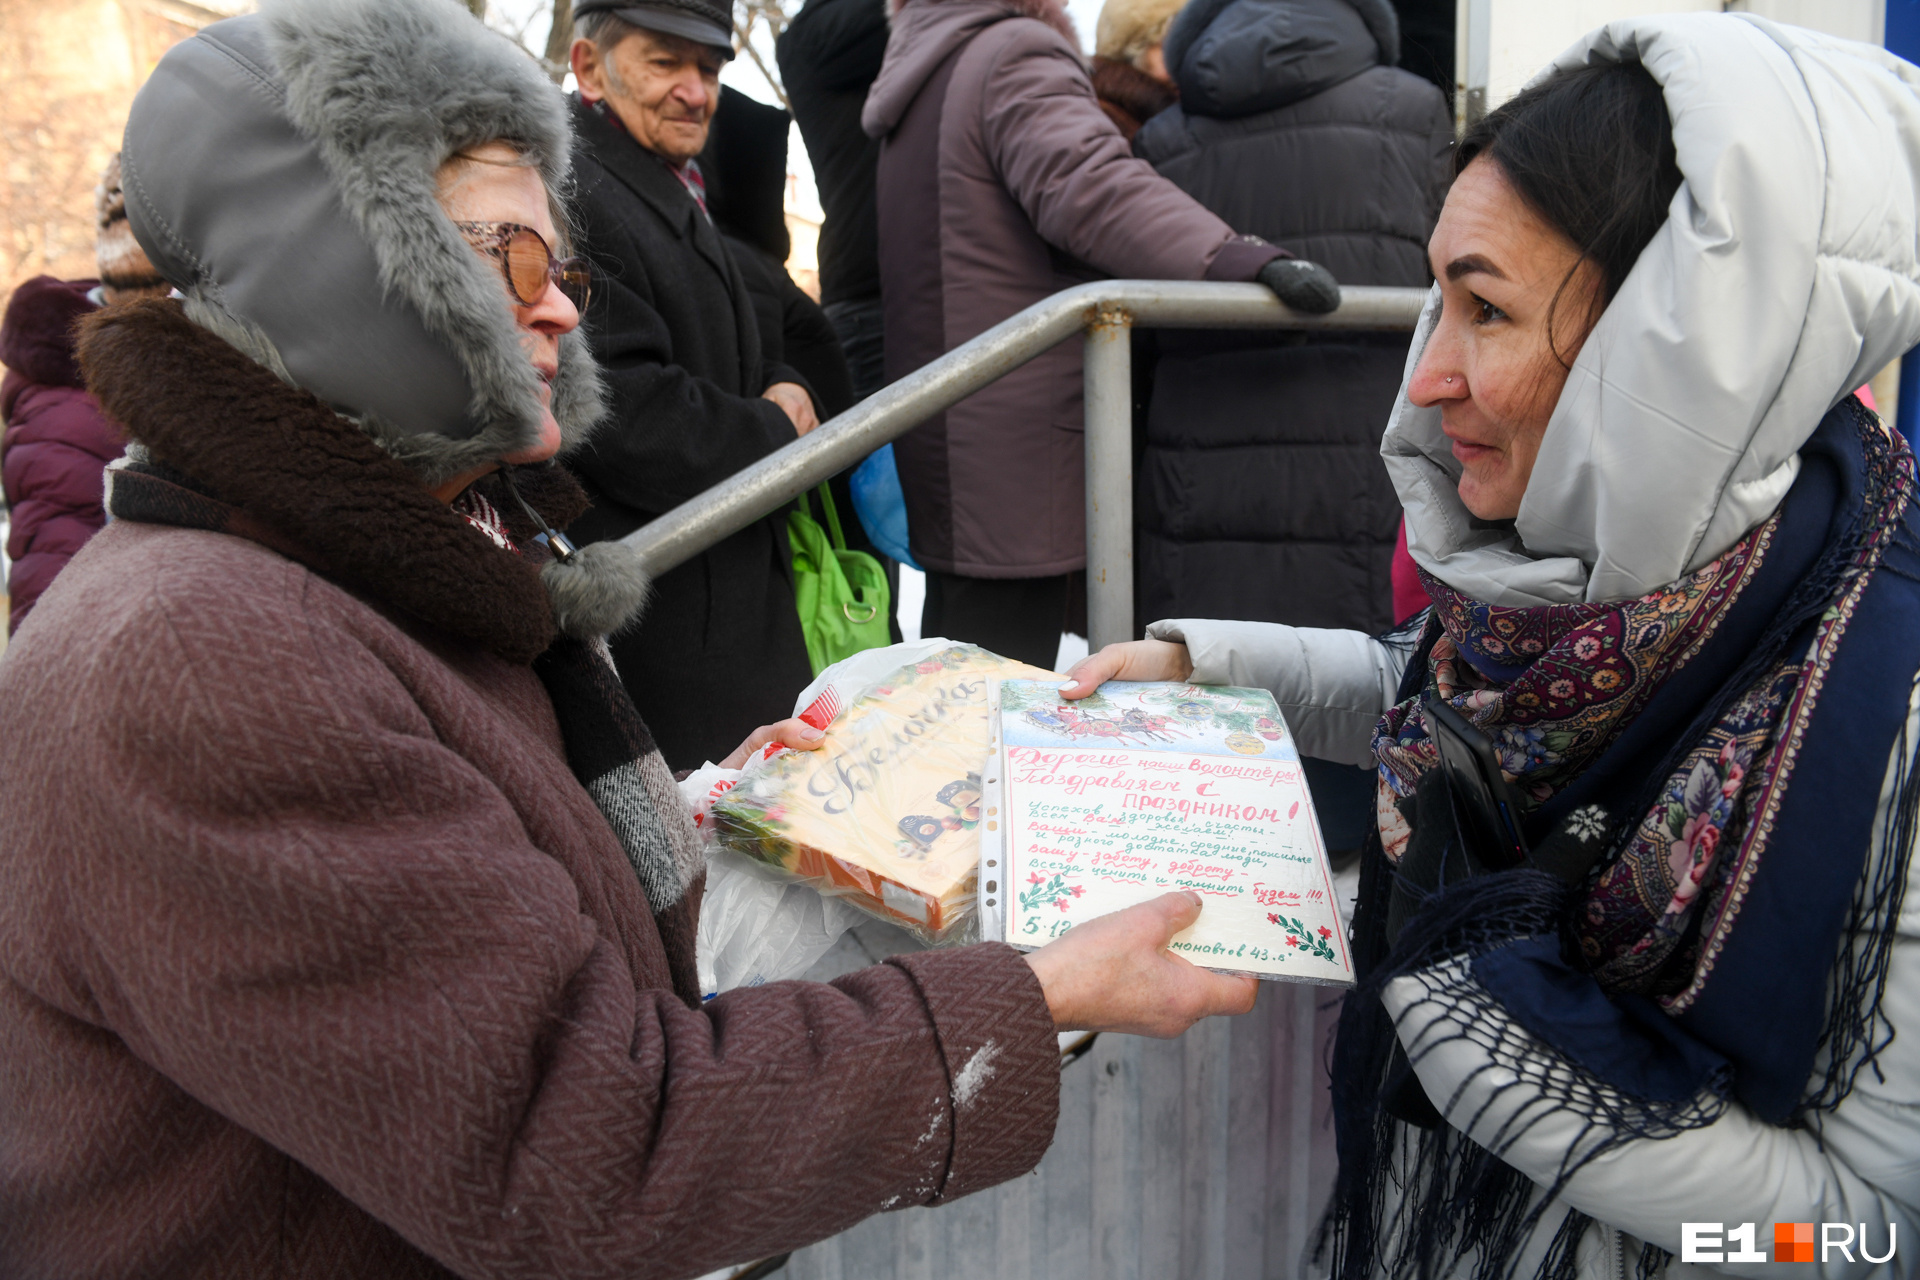 Одна из женщин поздравила сотрудников фонда «Люблю и благодарю» с Днем волонтера — он отмечается 5 декабря